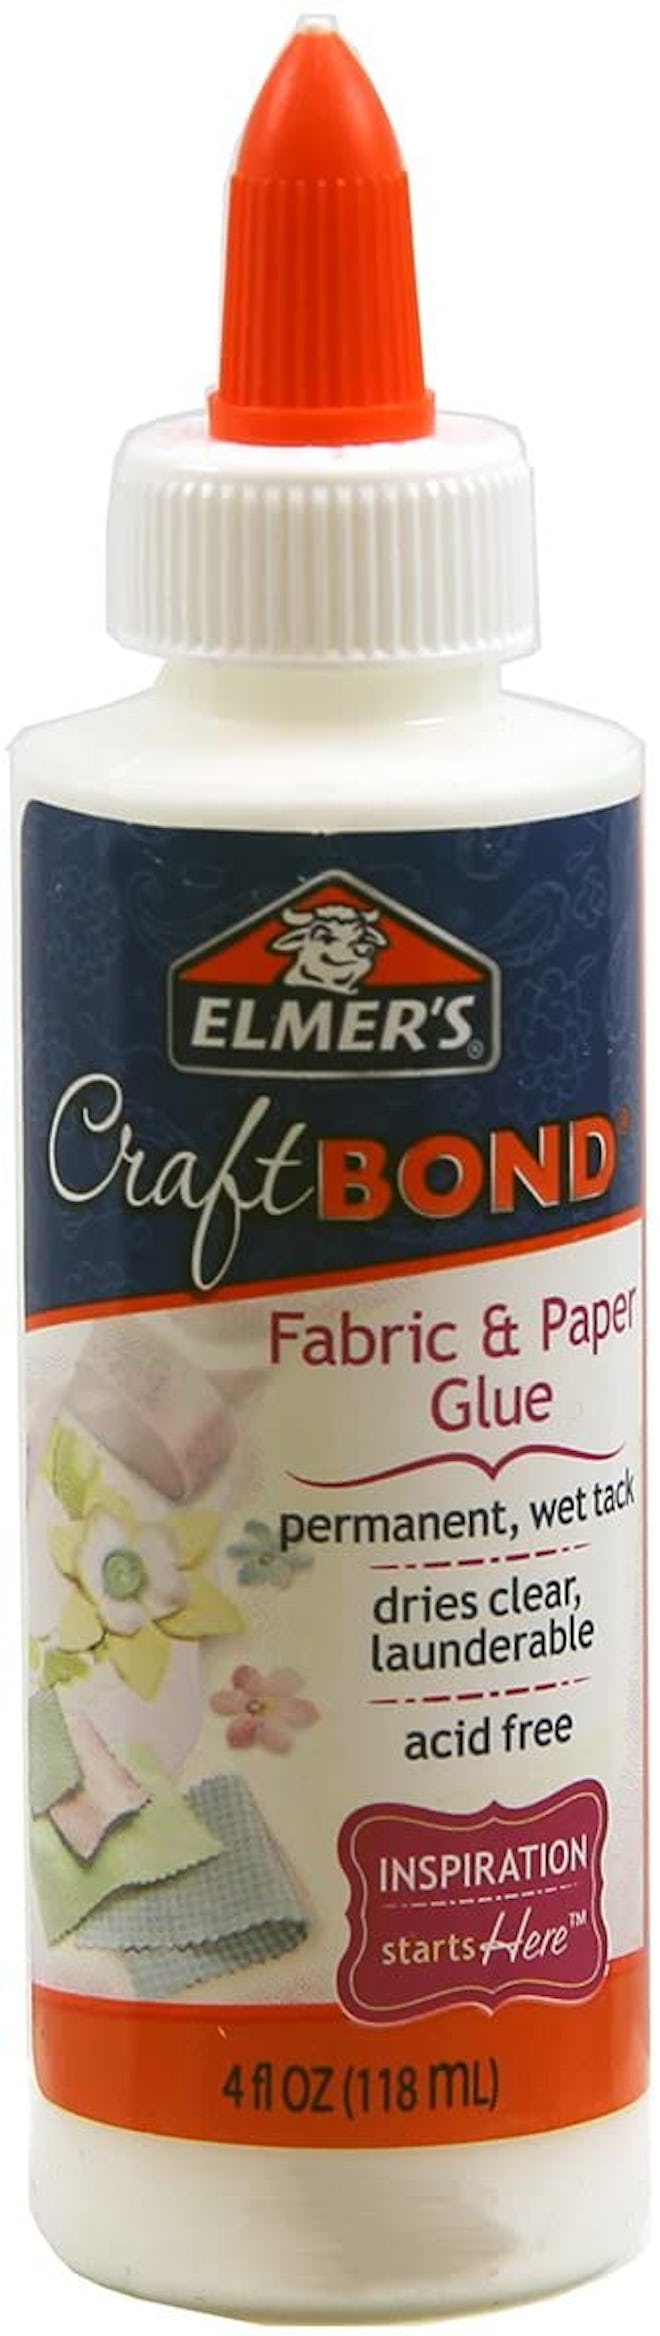 Elmer's Craft Bond Fabric And Paper Glue, 4 oz. 